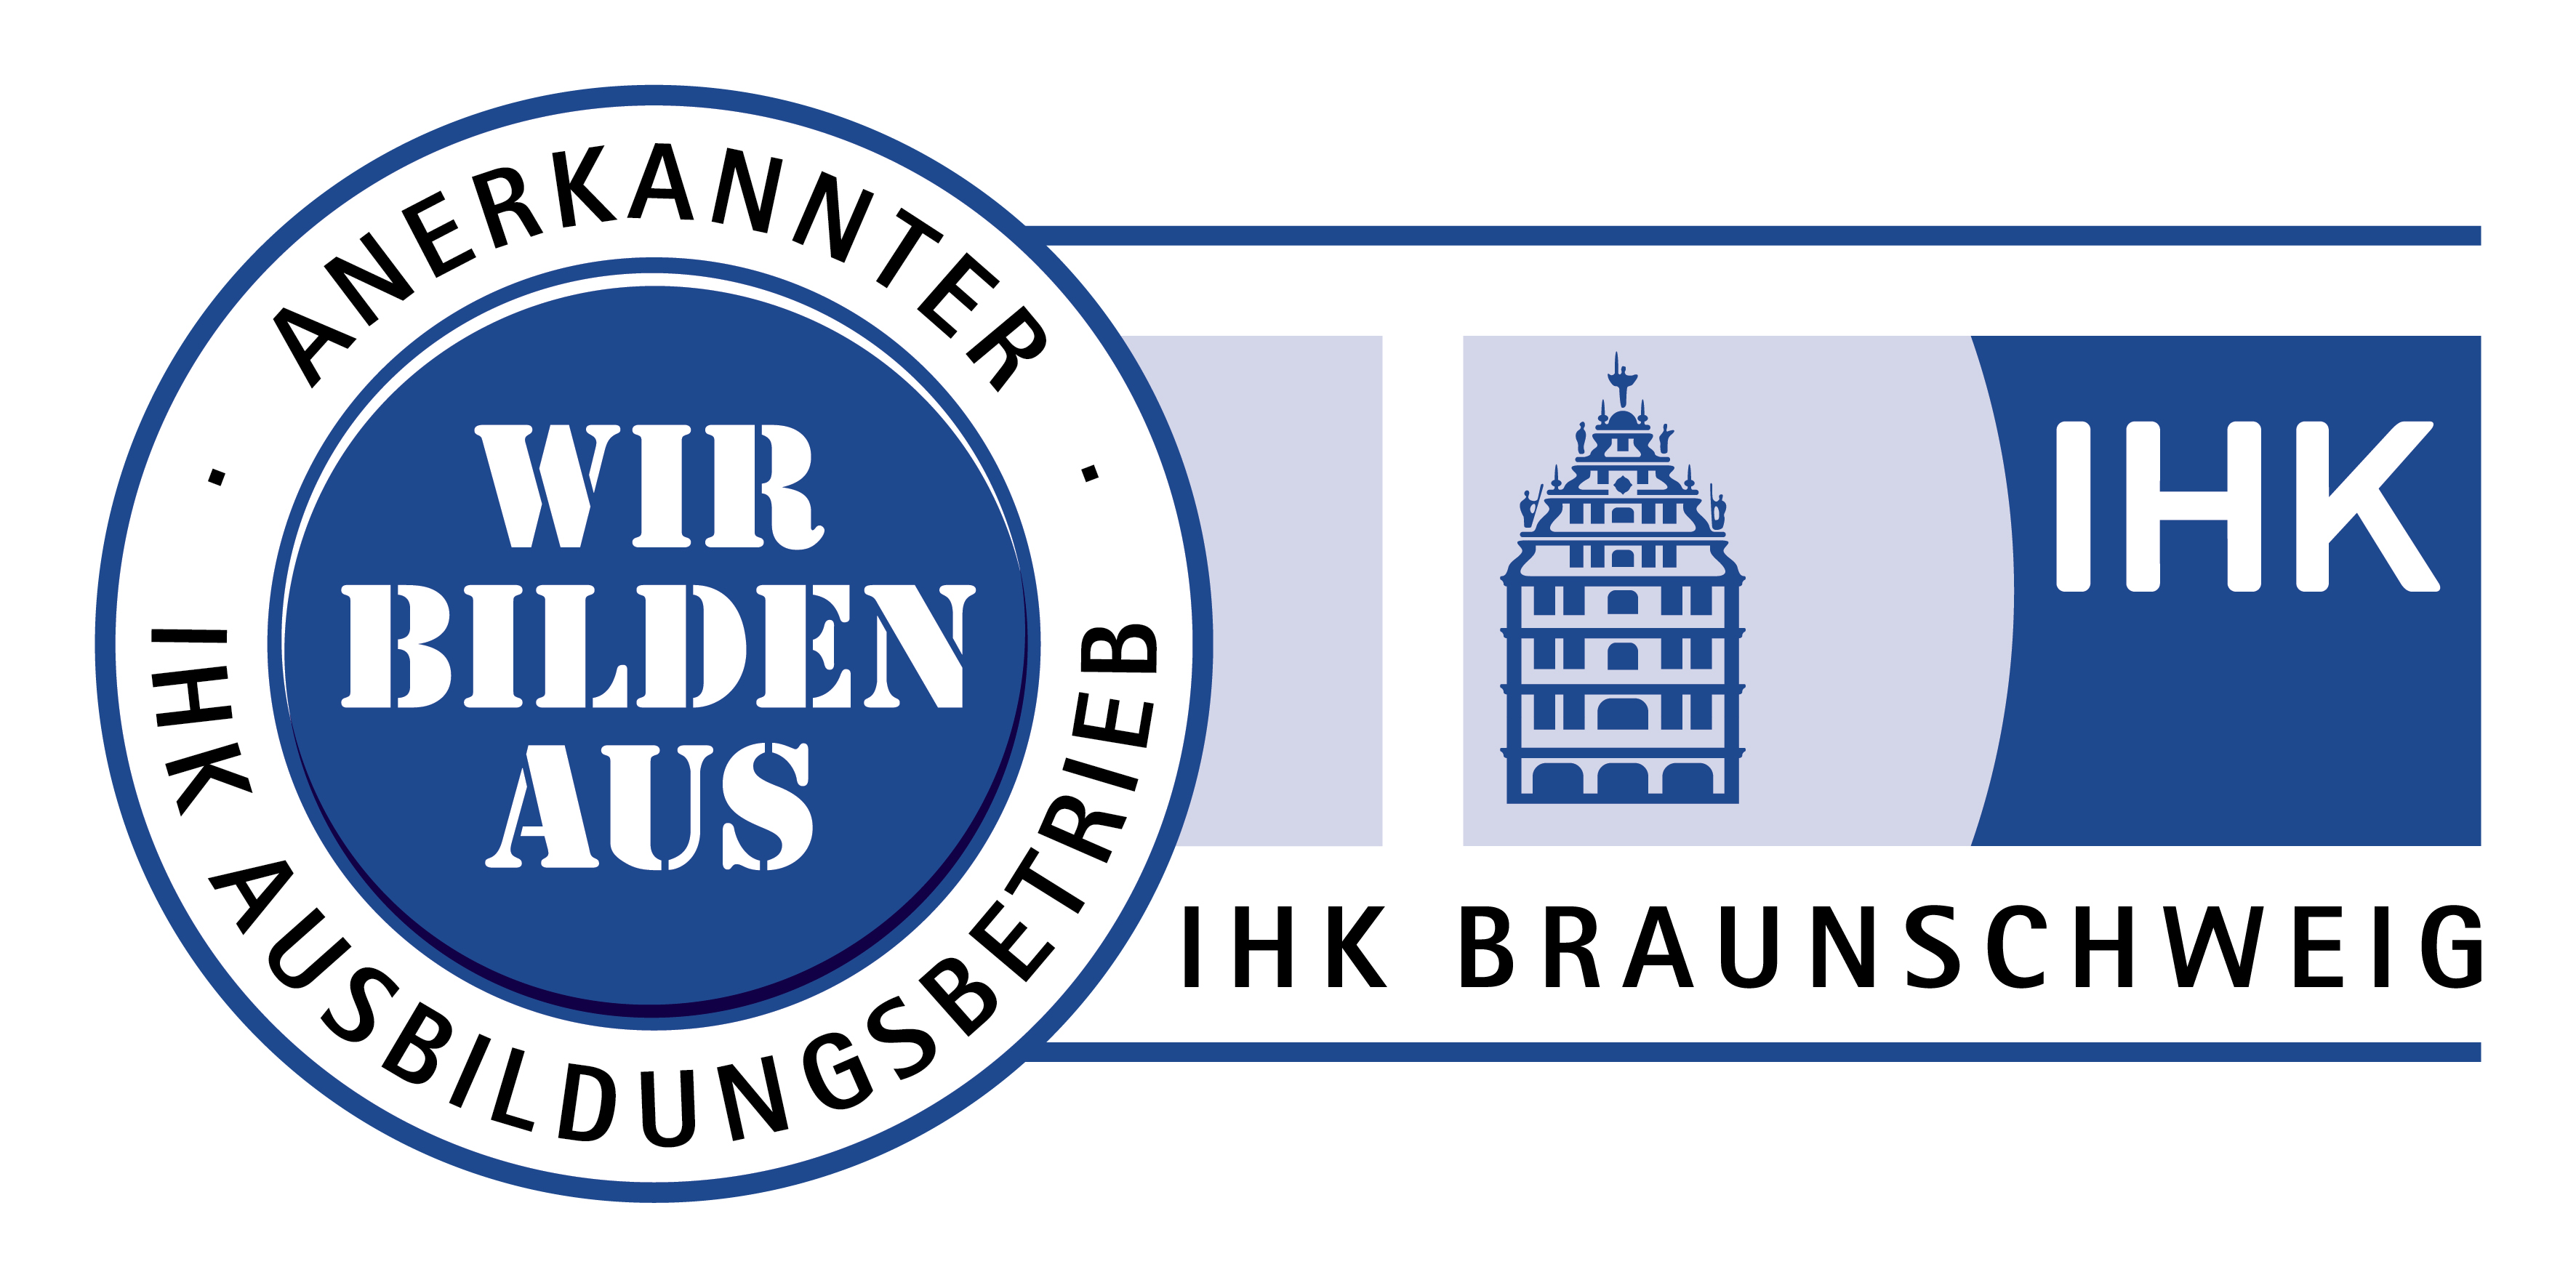 Anerkannter Ausbildungsbetrieb IHK Braunschweig